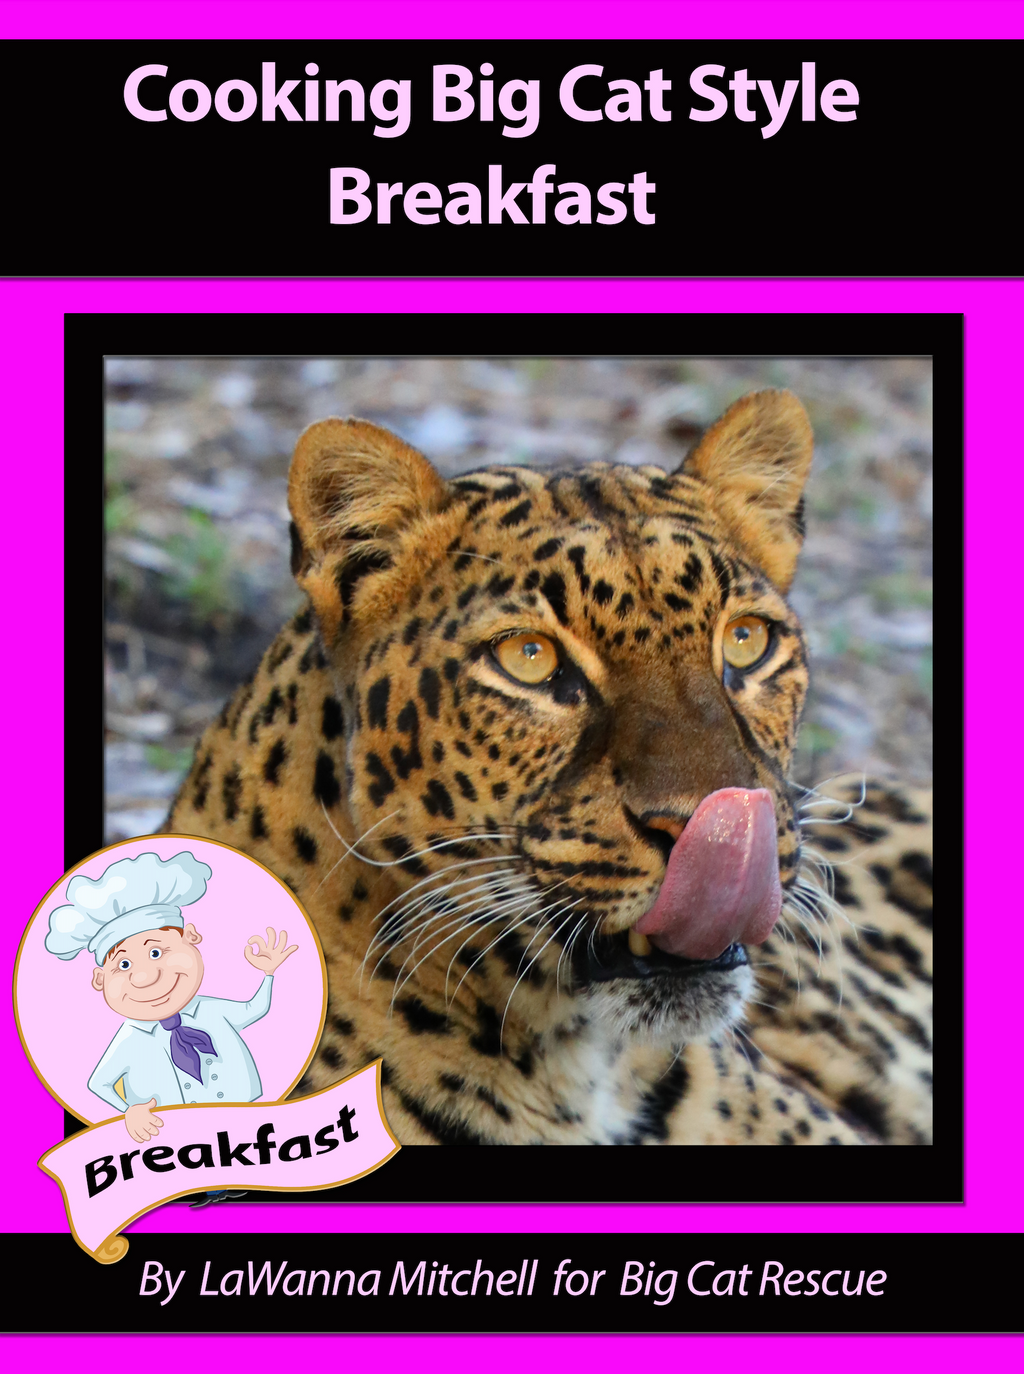 Download - Big Cat Rescue Breakfast Cookbook